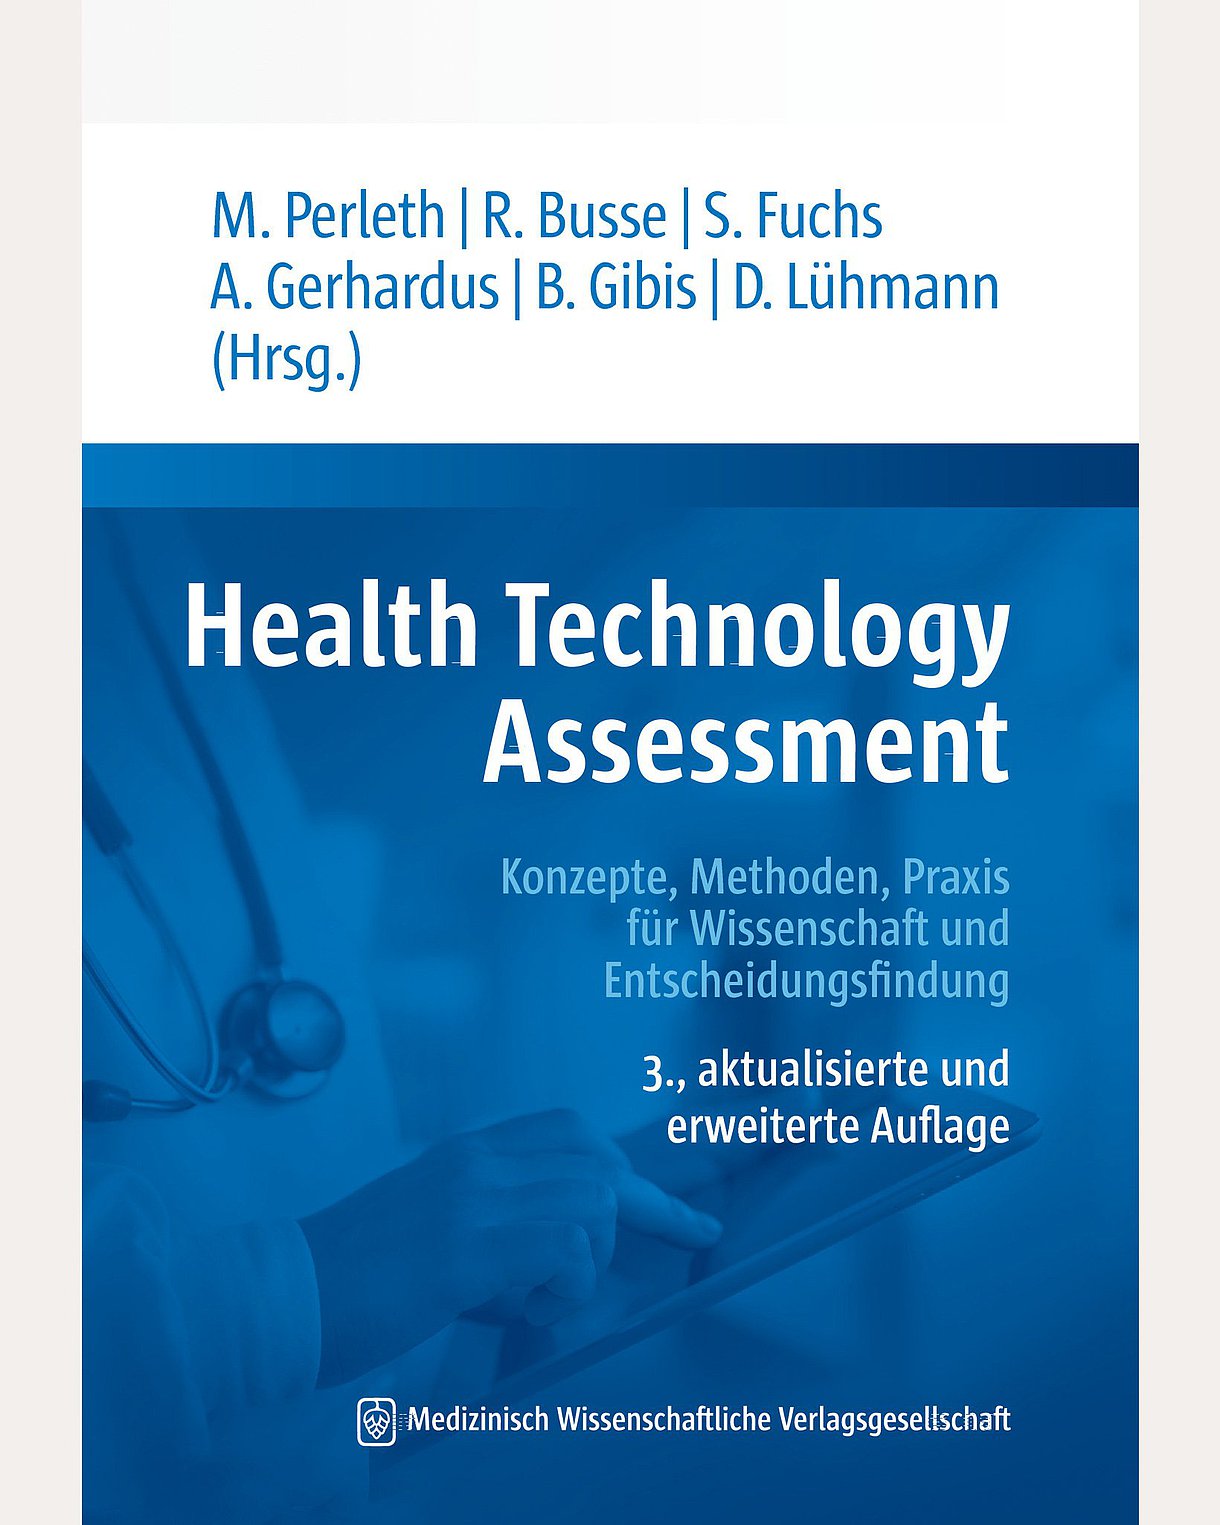 Cover des Buches "Health Technology ­Assessment" in den Farben Blau und Weiß